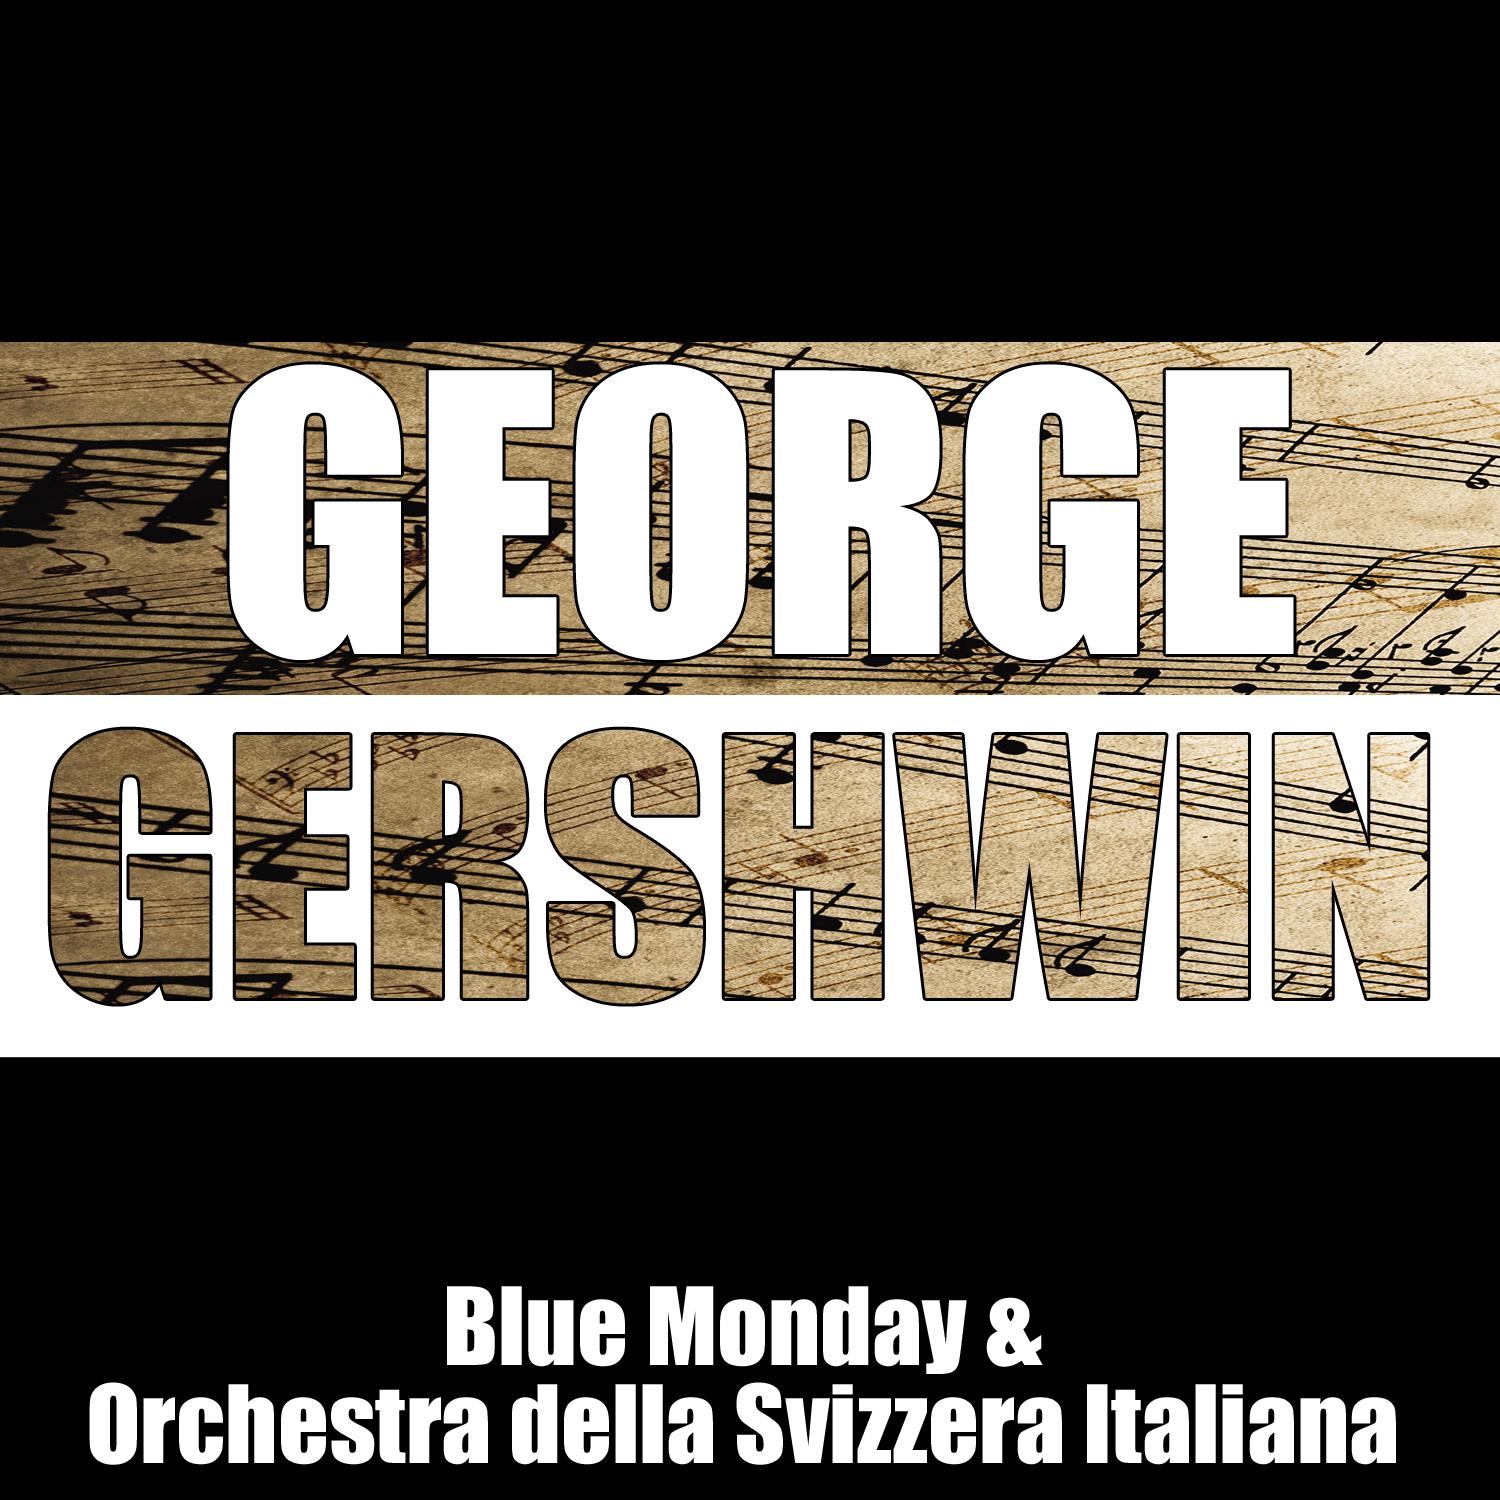 Blue Monday & Orchestra della Svizzera Italiana